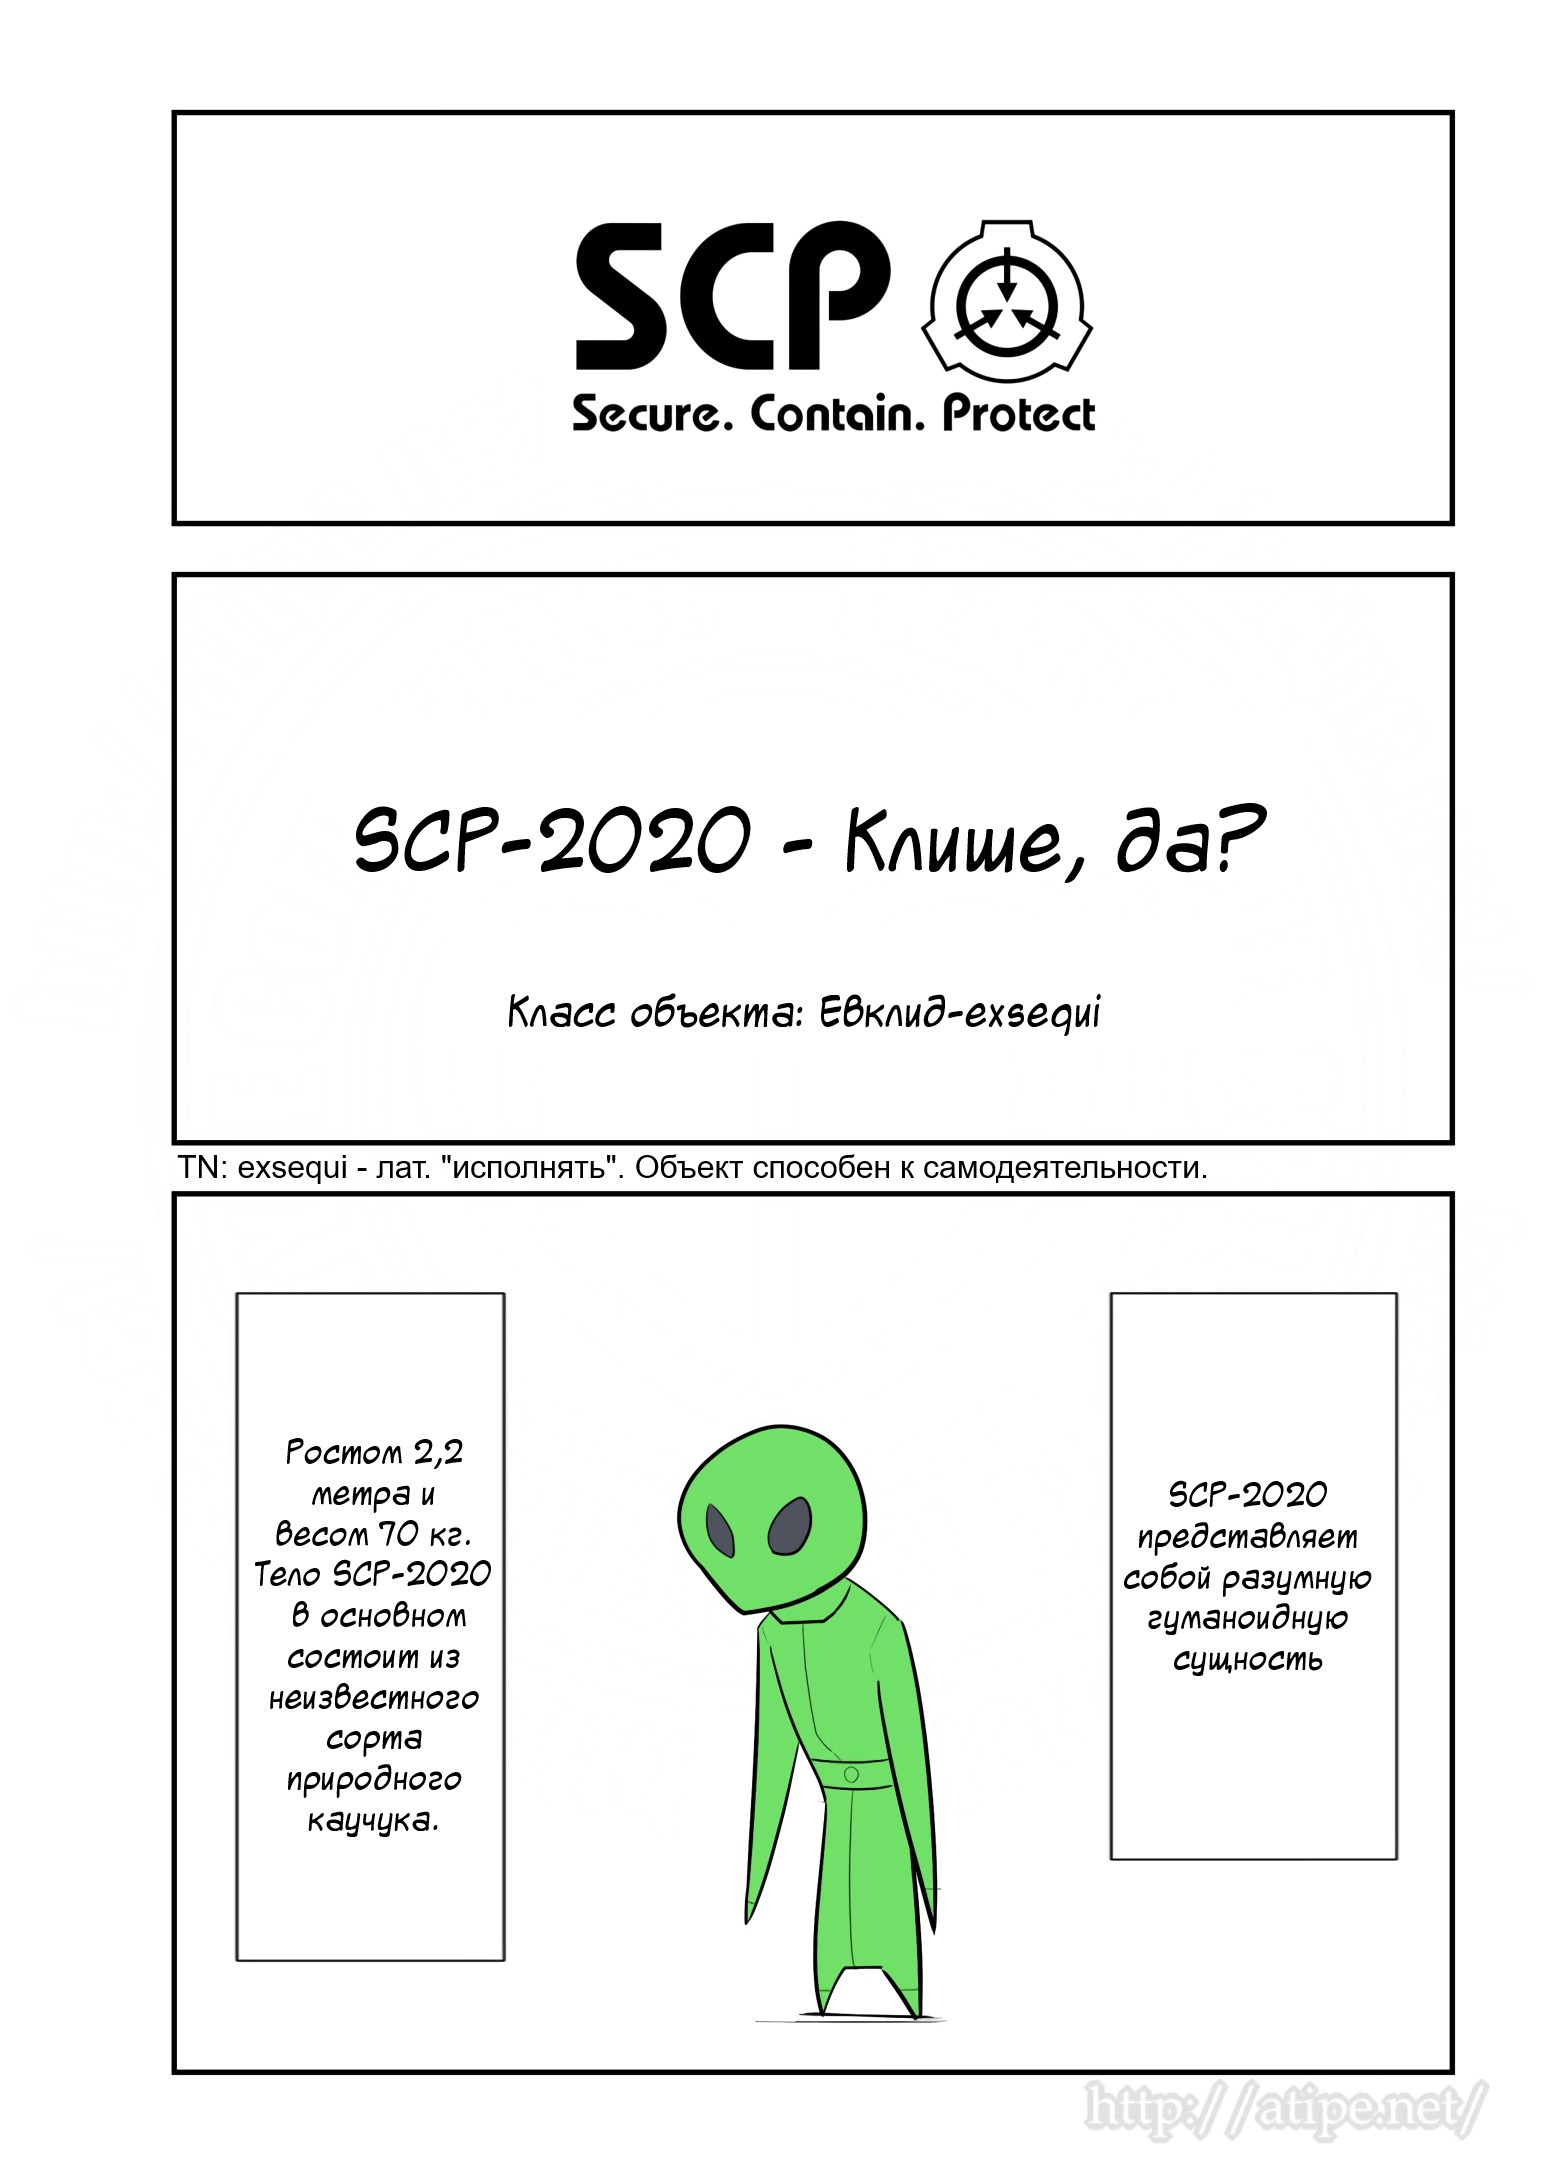 Упрощенный SCP 1 - 80 SCP-2020